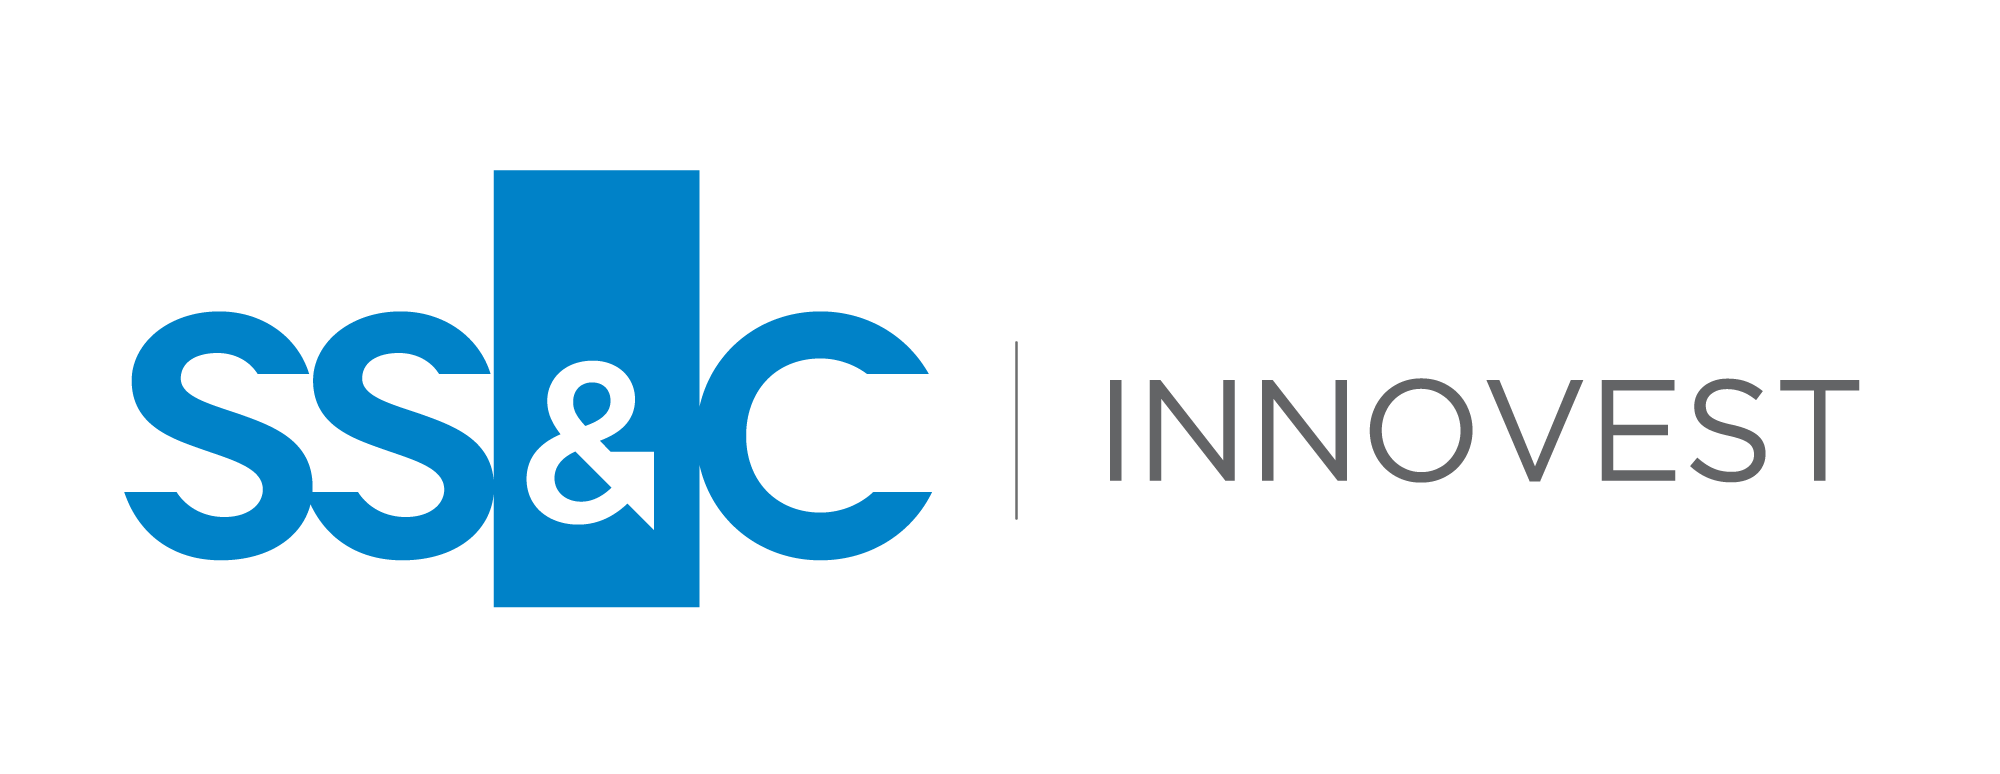 SS & C Innovest Logo